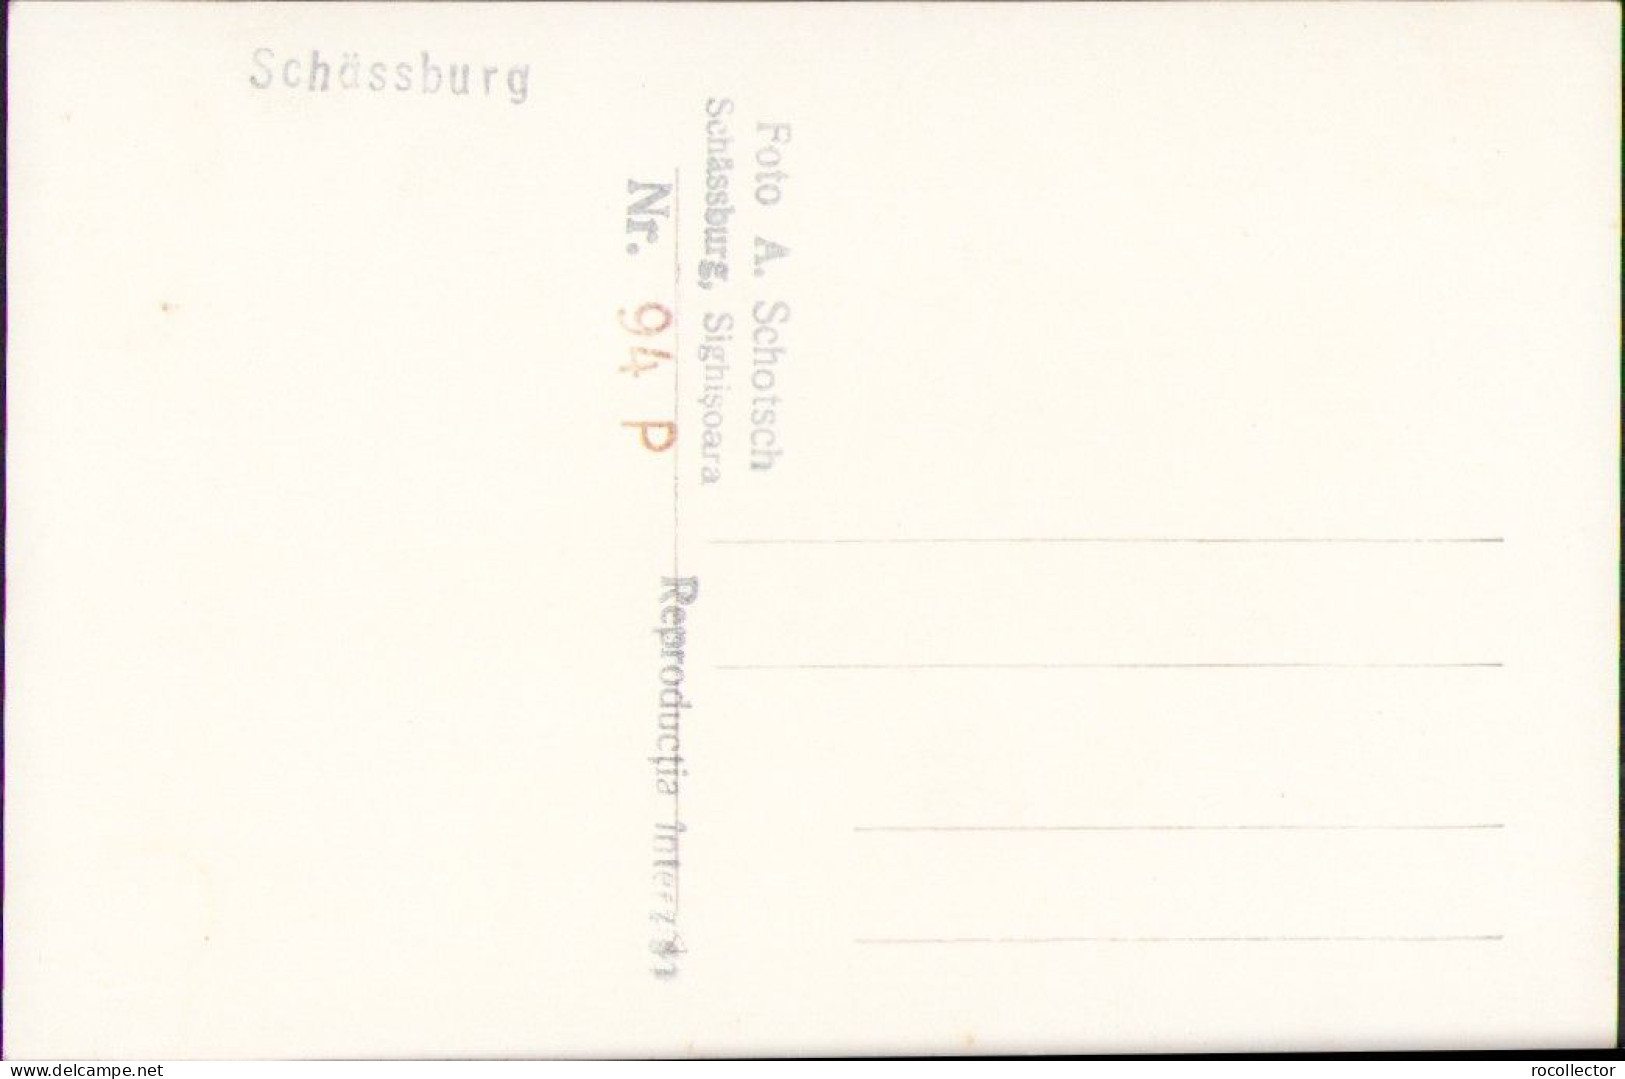 Schässburg Segesvar Sighișoara Studio Albert Schotsch Postcard CP359 - Roemenië